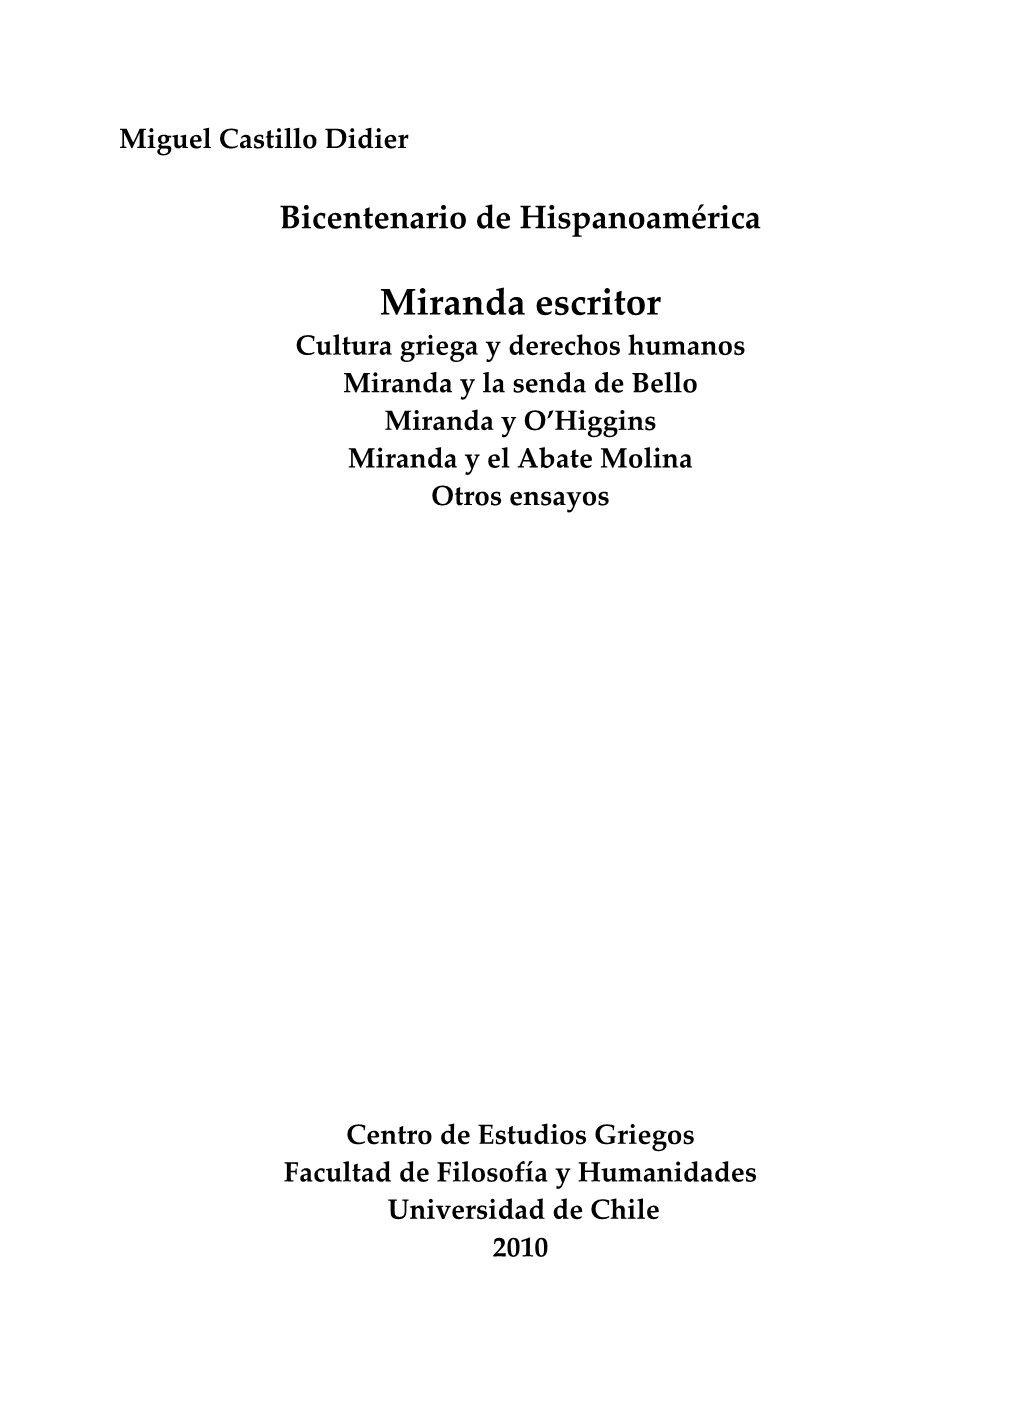 Bicentenario De Hispanoamérica: Miranda Escritor Miguel Castillo Didier